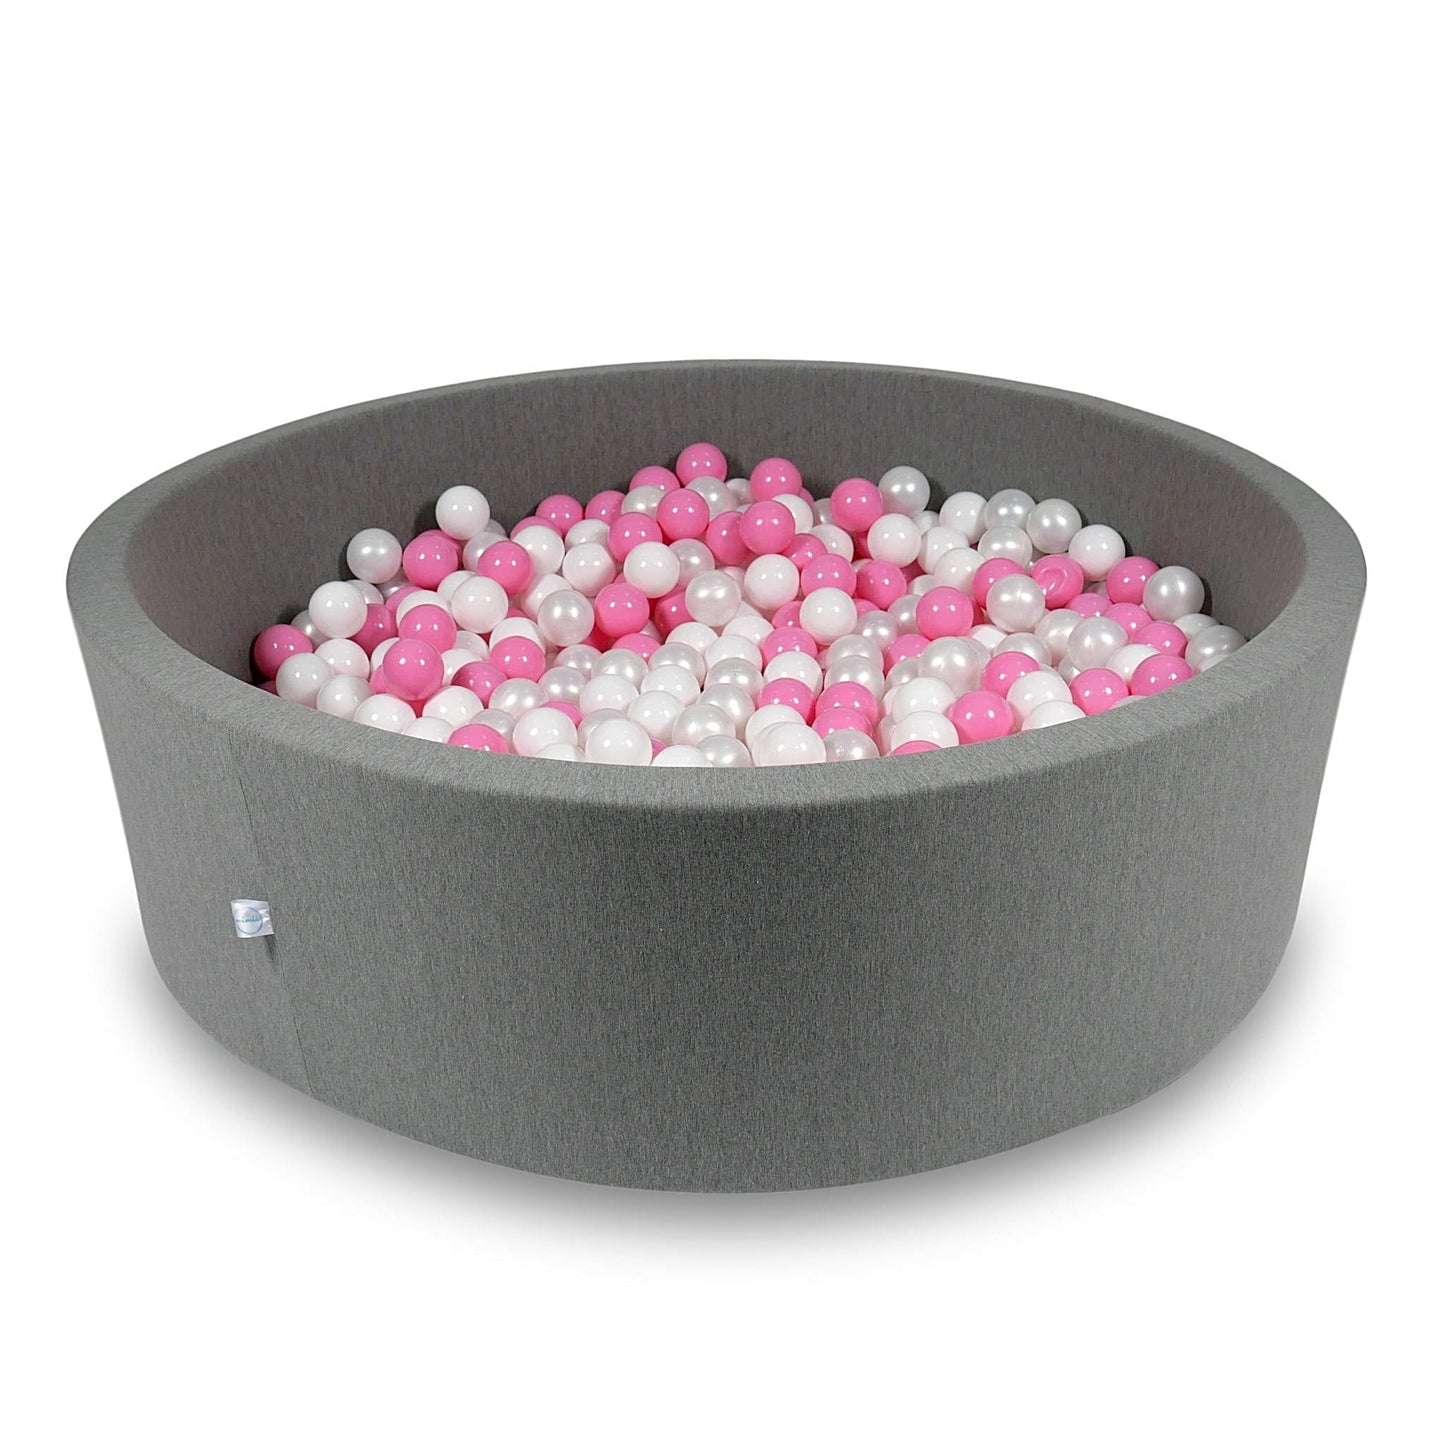 Piscine à Balles 130x40cm grise avec balles 700pcs (blanc, perle, rose poudre)